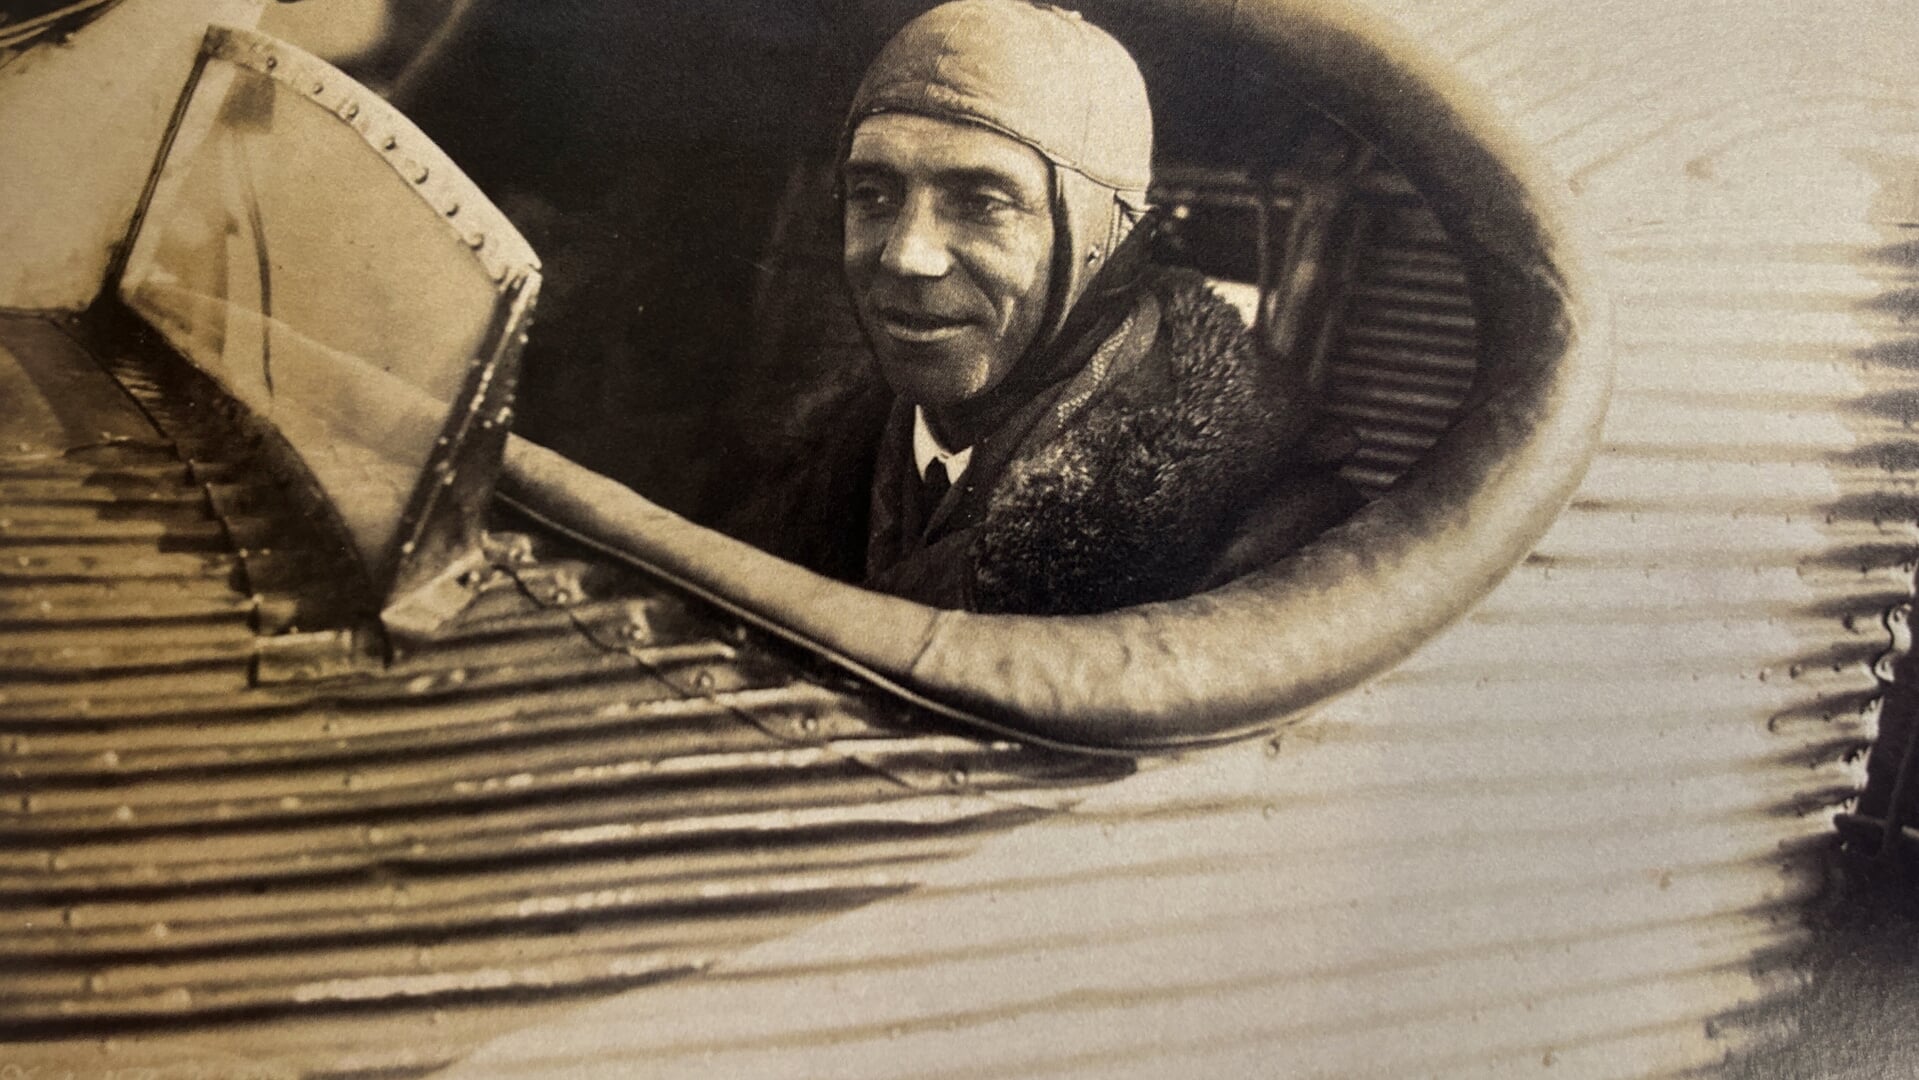 Mens komforten var steget meget for flypassagerer, var der endnu langt ind i 1920erne en fast tro på, at piloten helst burde sidde i fri luft, hvis han skulle have den nødvendige føling med flyvingen. Det var også tilfældet i en Junkers F.13, hvor Christian L. Johannsen ses i cockpittet. Foto: